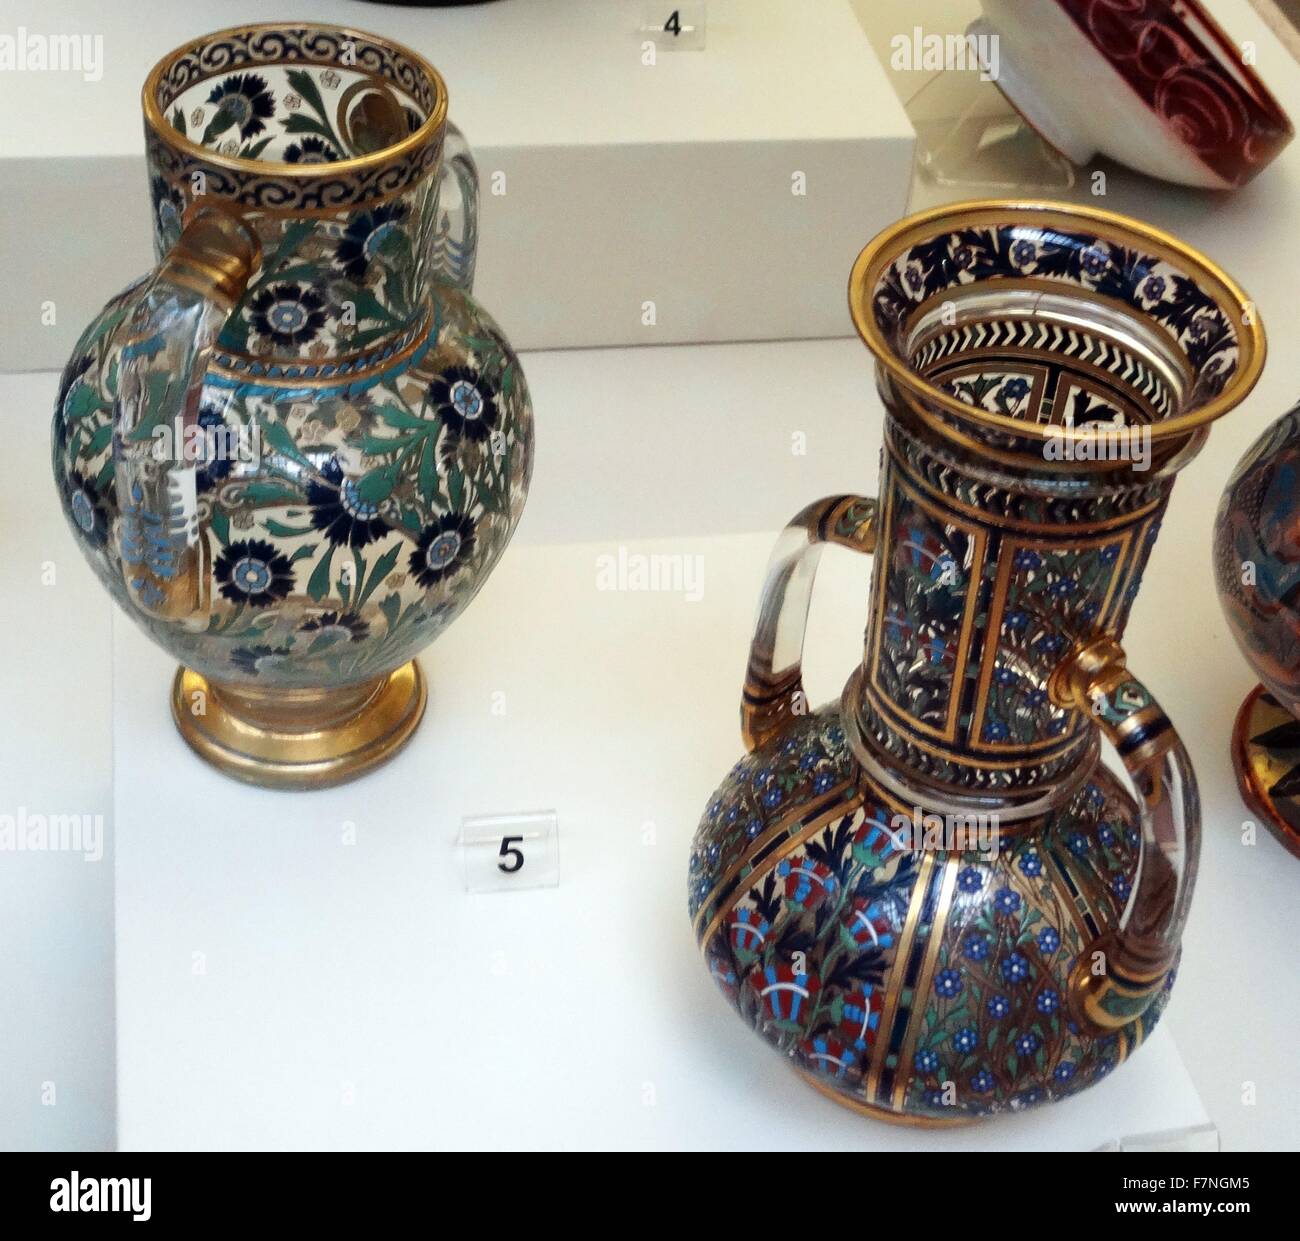 Vase von J & L Lobmeyr, Wien, Österreich. Bleiglas mit Emaille und  vergoldeten gemalt. Während des 19. Jahrhunderts wurden eifrig islamischen  Objekte in ganz Europa gesammelt Stockfotografie - Alamy